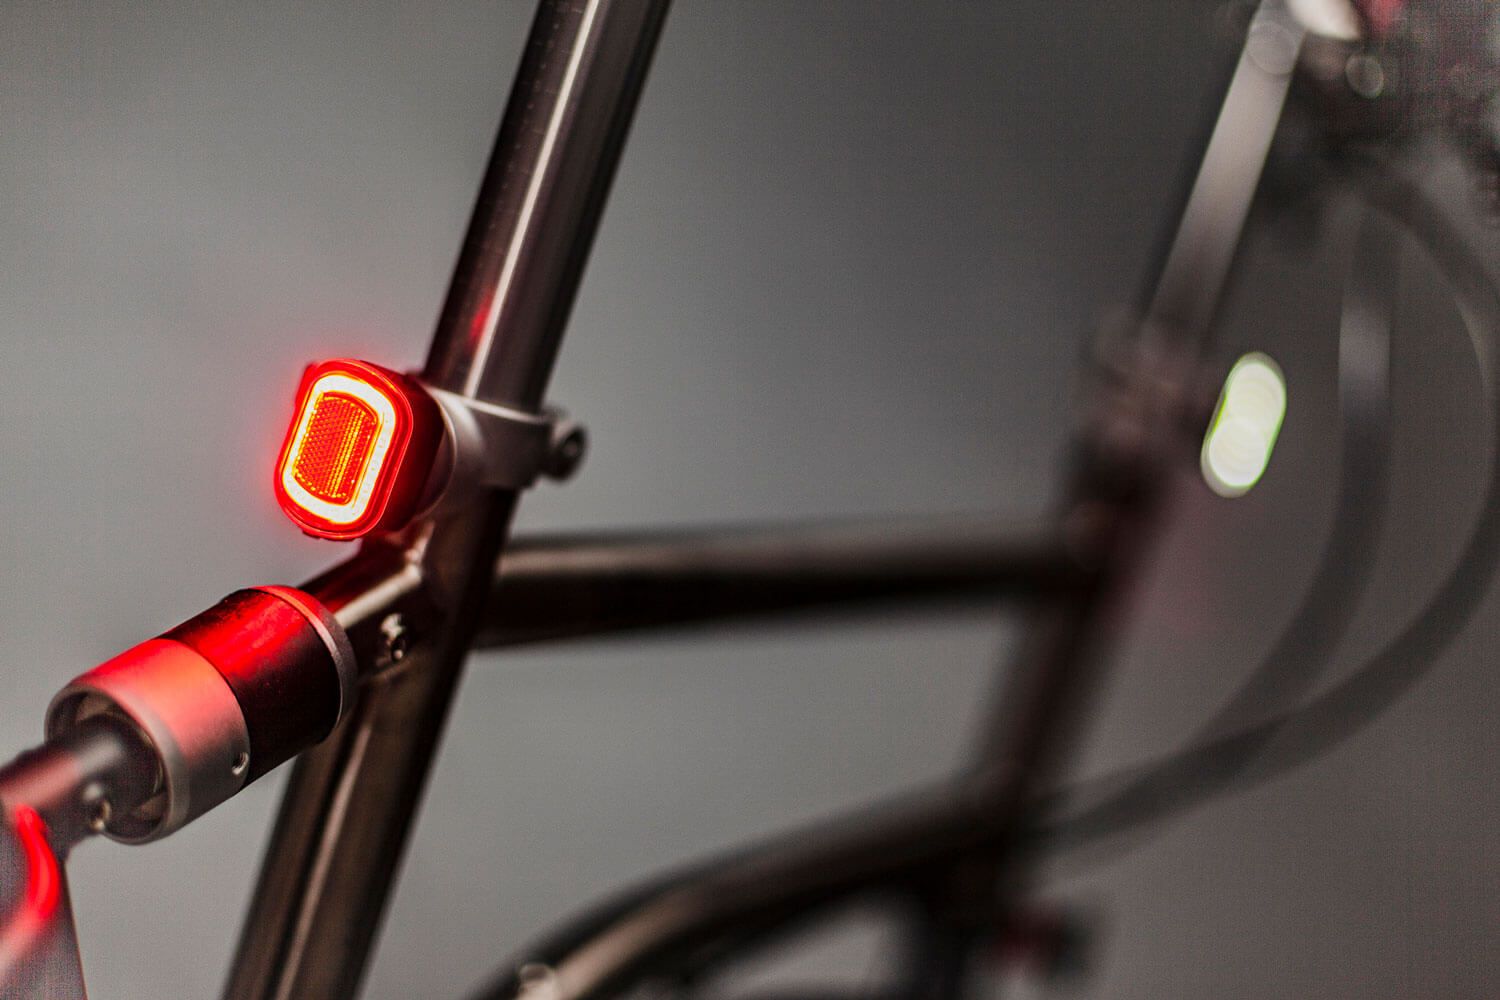 Feux de sécurité pour vélo VELLO LED - Commandez en ligne